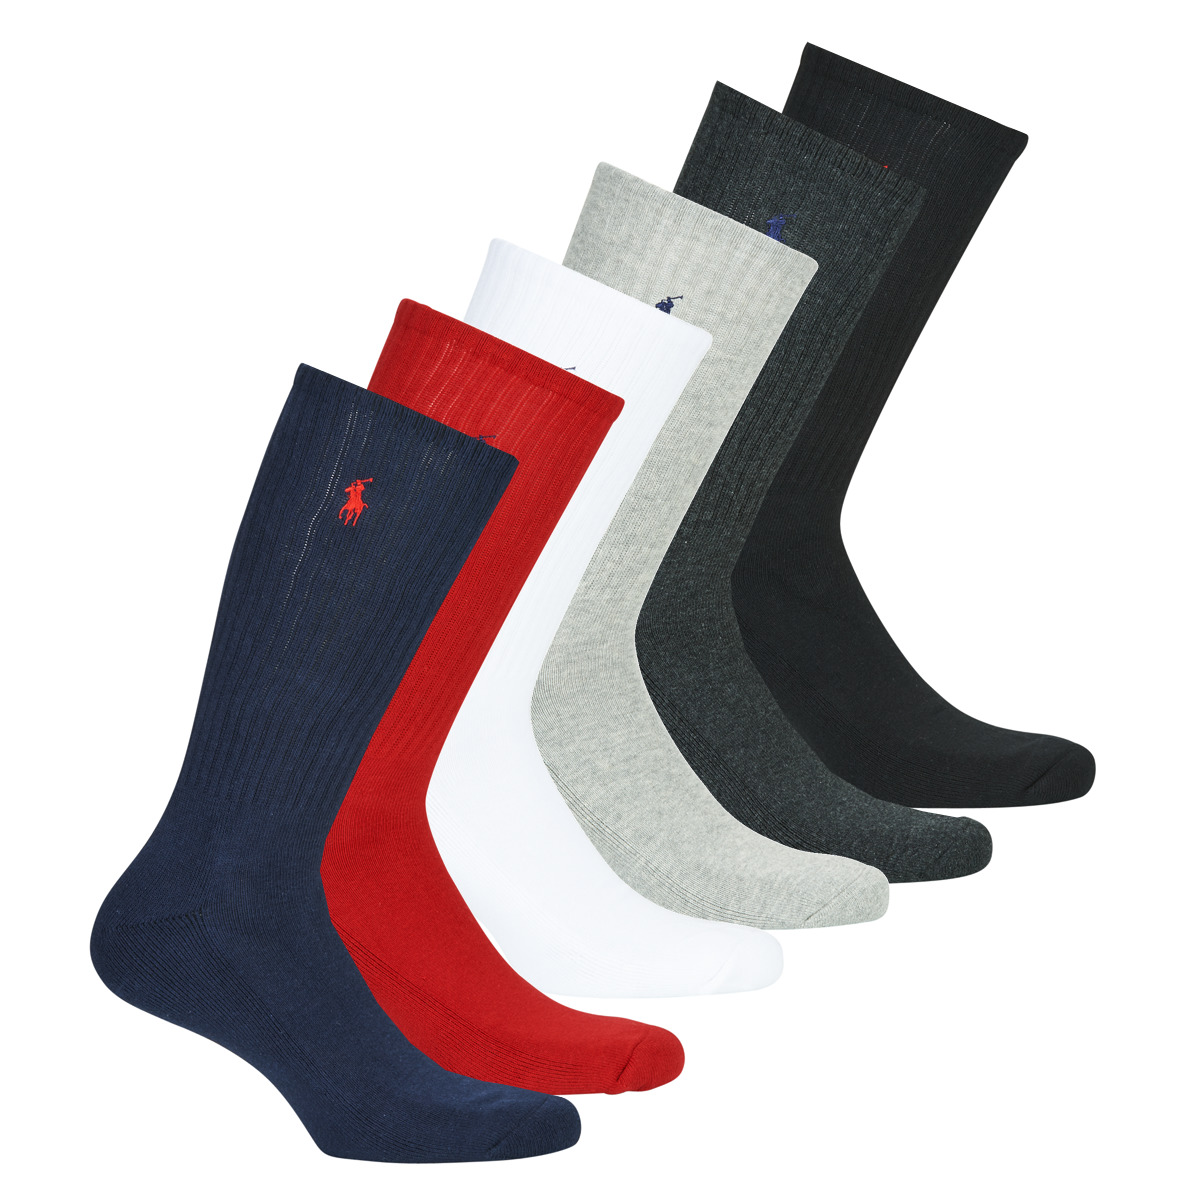 Modni dodaci Sportske čarape Polo Ralph Lauren ASX110 6 PACK COTTON Crna / Crvena / Siva / Bijela